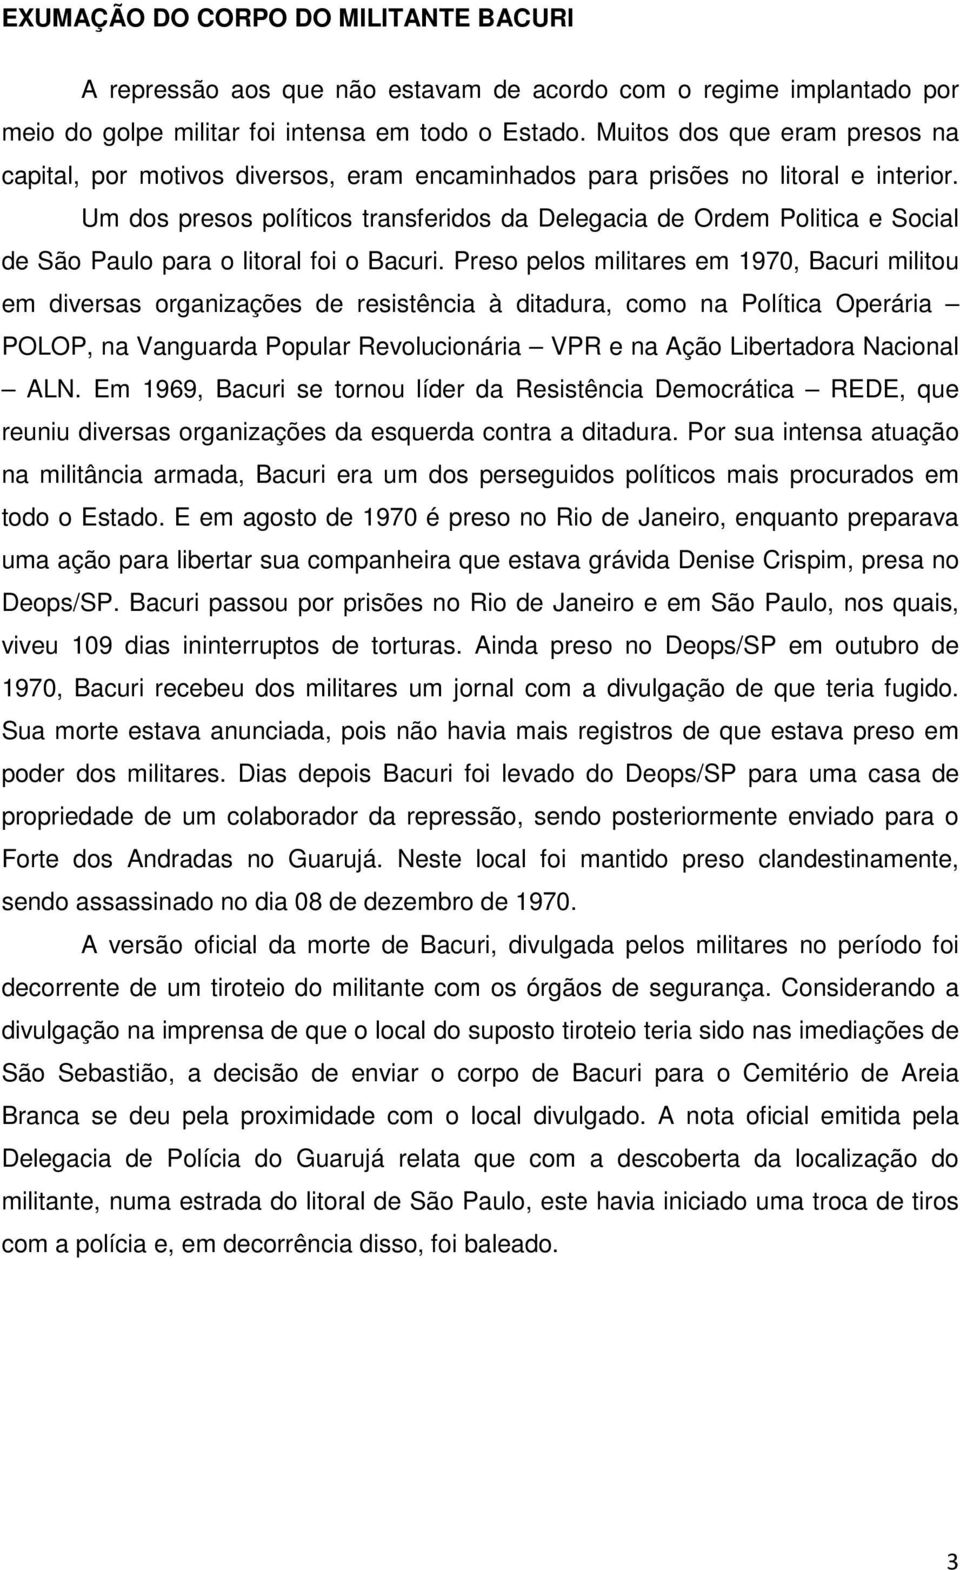 Um dos presos políticos transferidos da Delegacia de Ordem Politica e Social de São Paulo para o litoral foi o Bacuri.